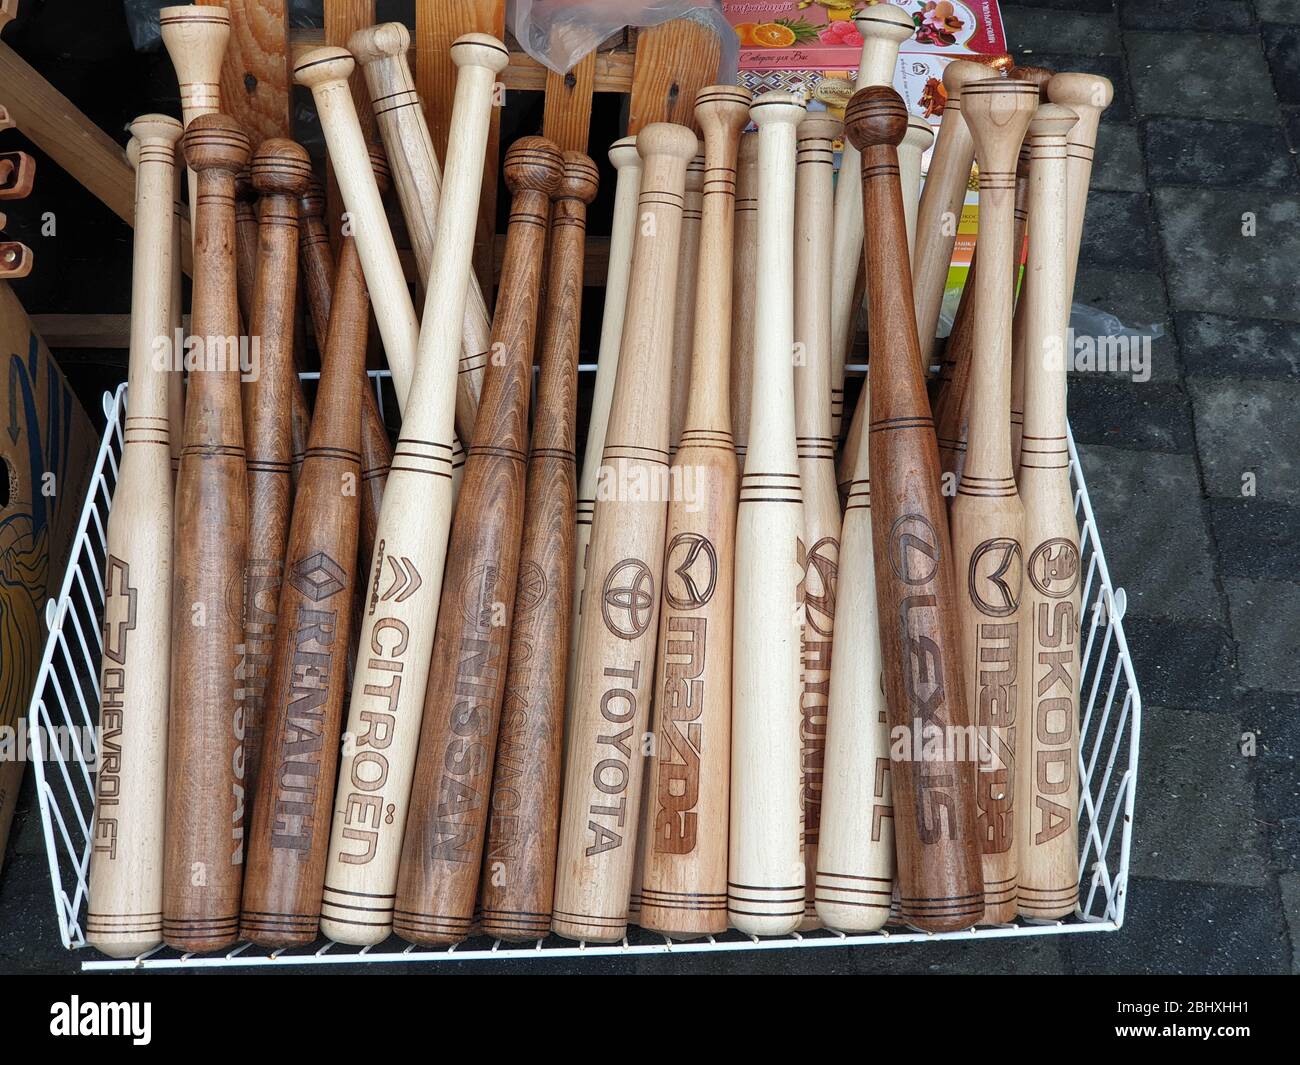 Baseball bats with various car manufacturer logos Stock Photo - Alamy